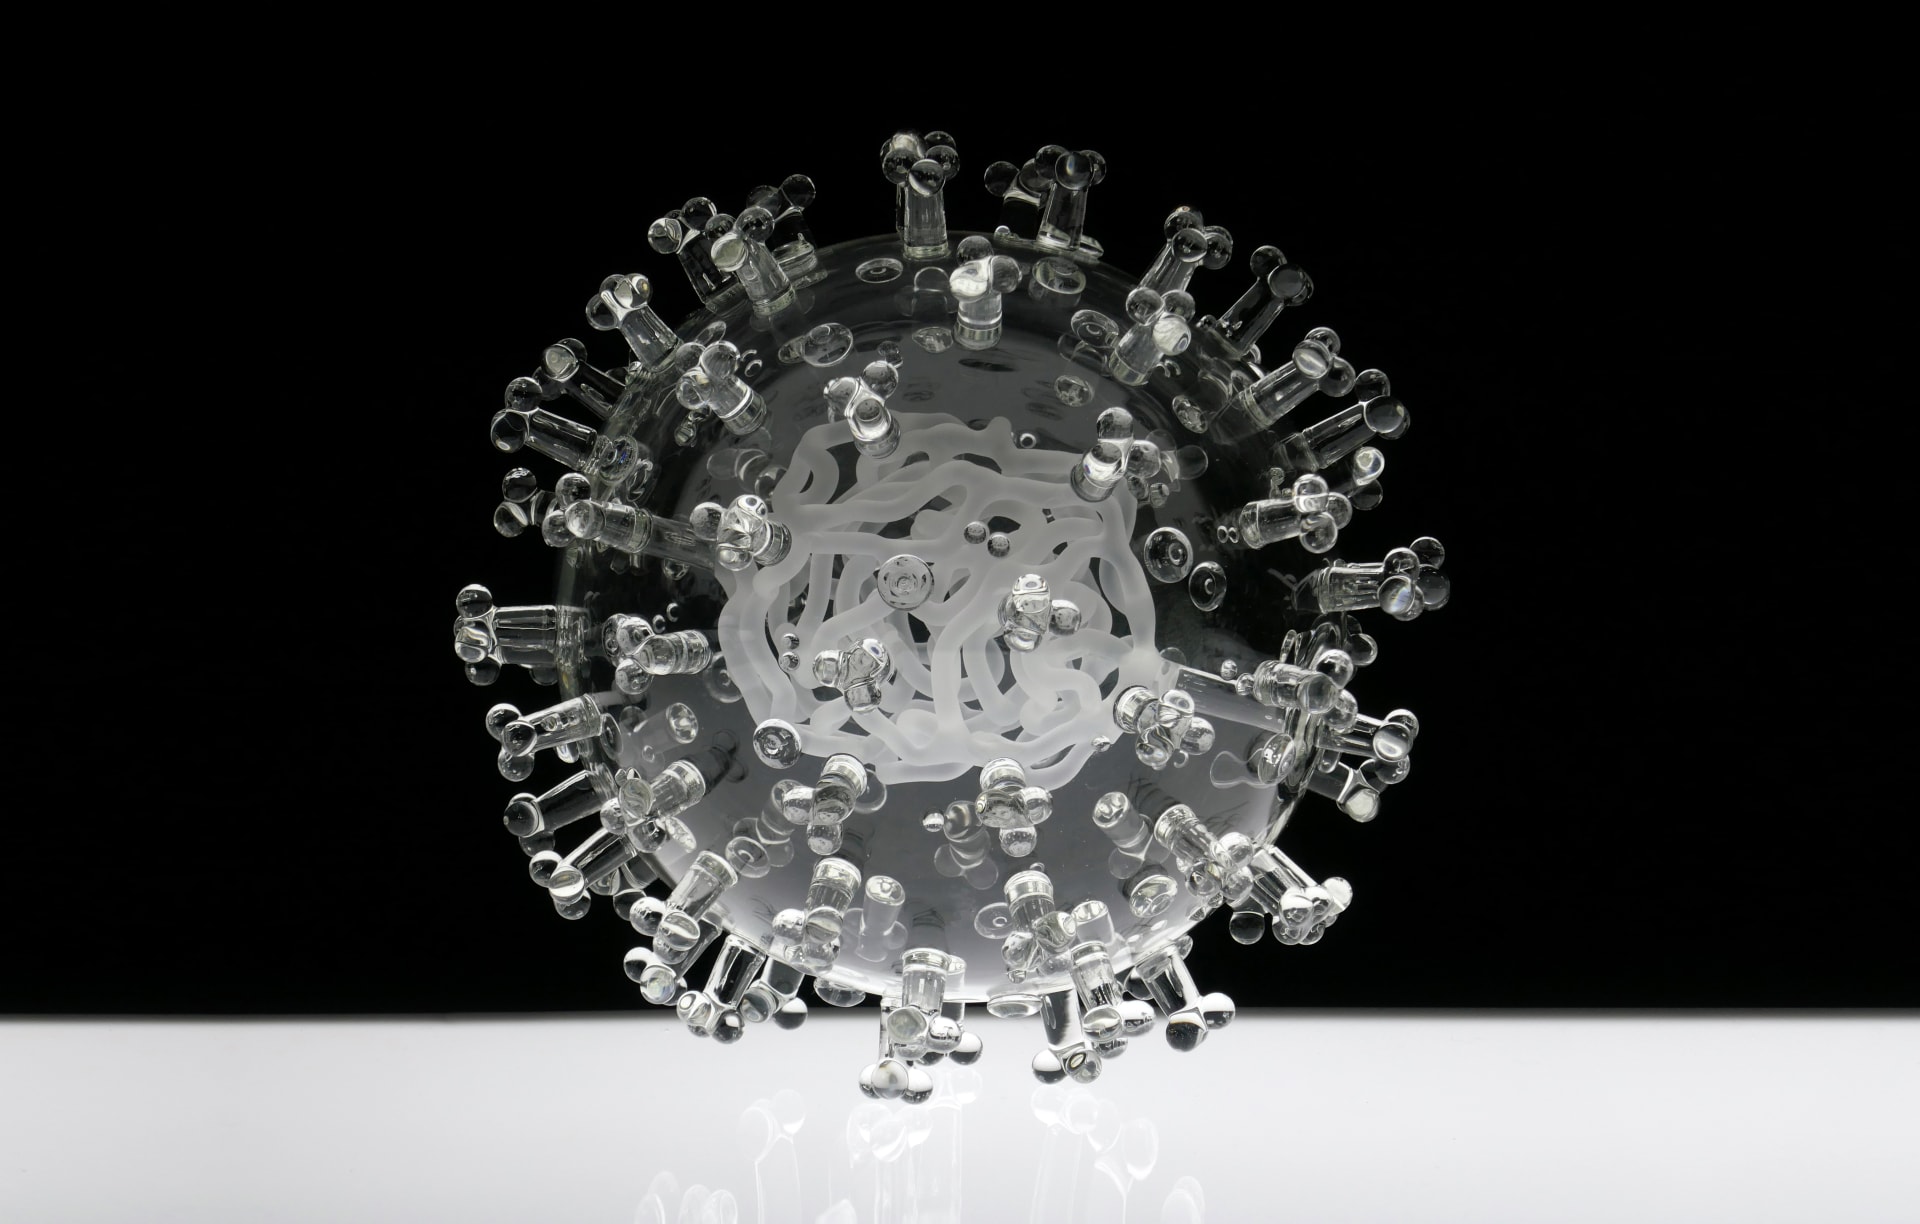 هل تعلم كيف يبدو فيروس كورونا في الحقيقة؟ فنان بريطاني يبين ذلك